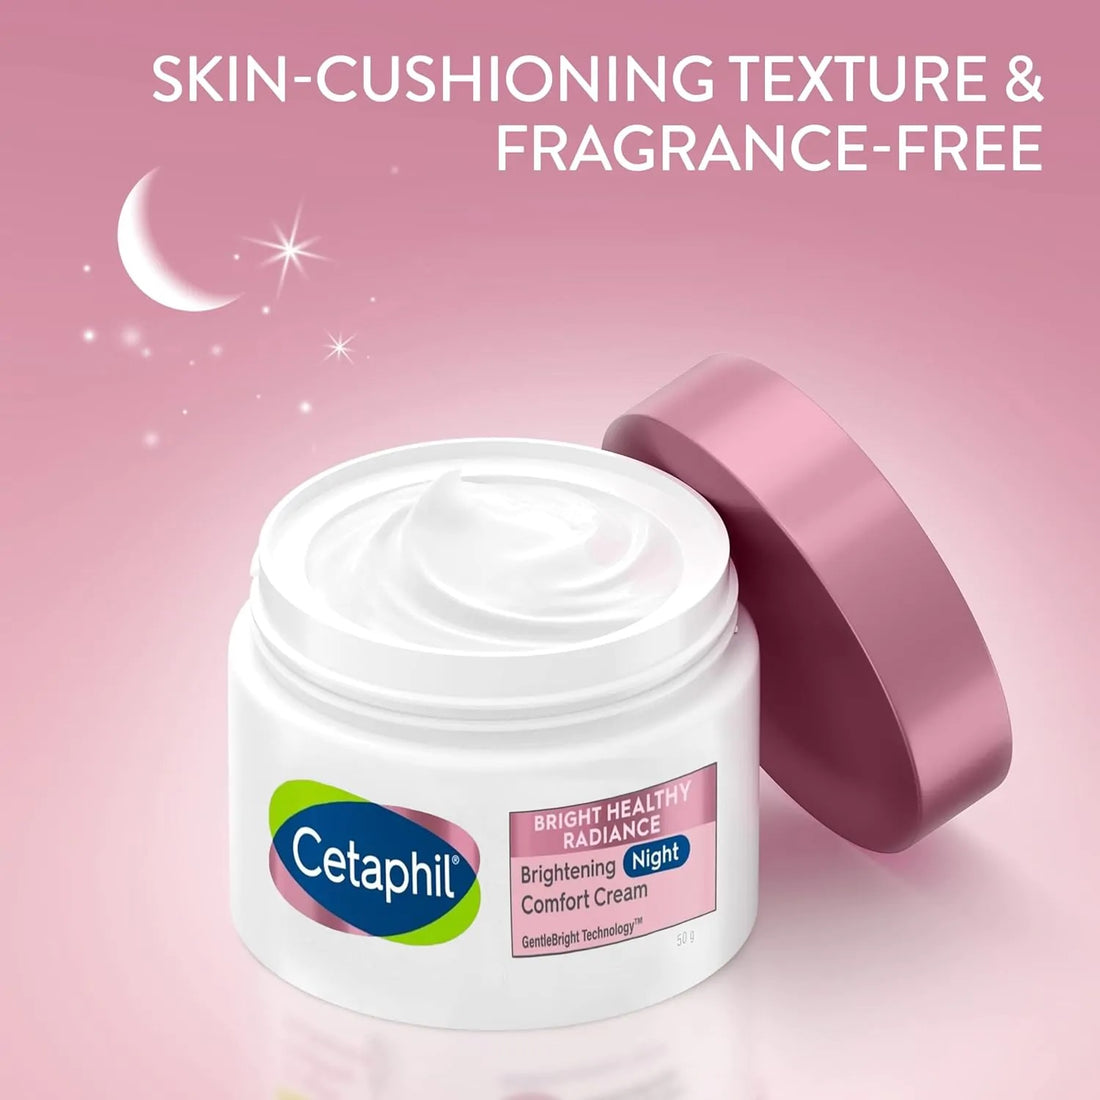 Cetaphil Brightening Night Comfort Cream (50gm)